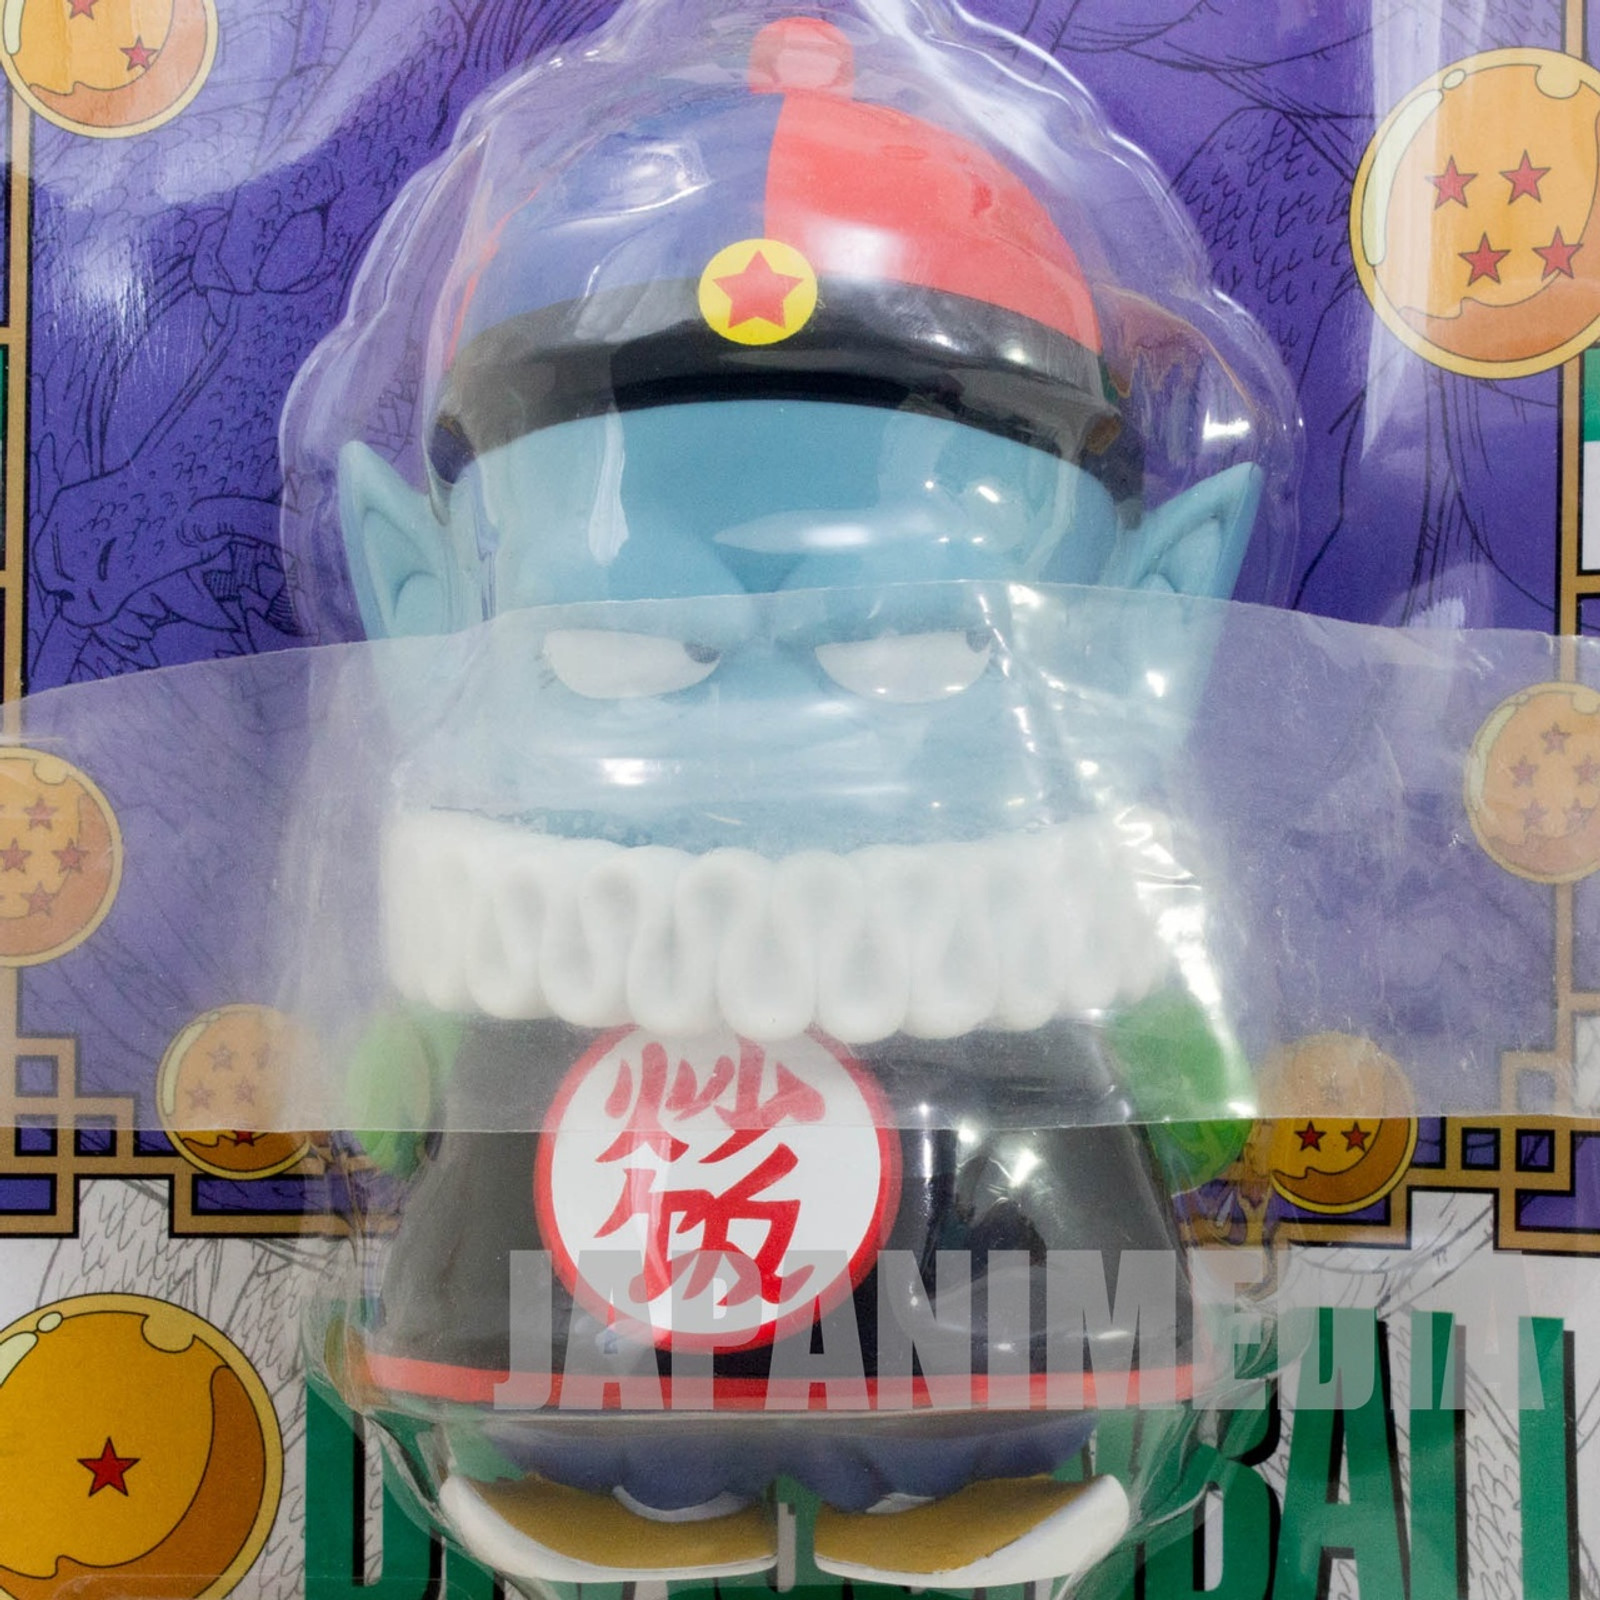 Dragon Ball Z Pilaf Robot Chara Puchi Mini Figure JAPAN ANIME MANGA